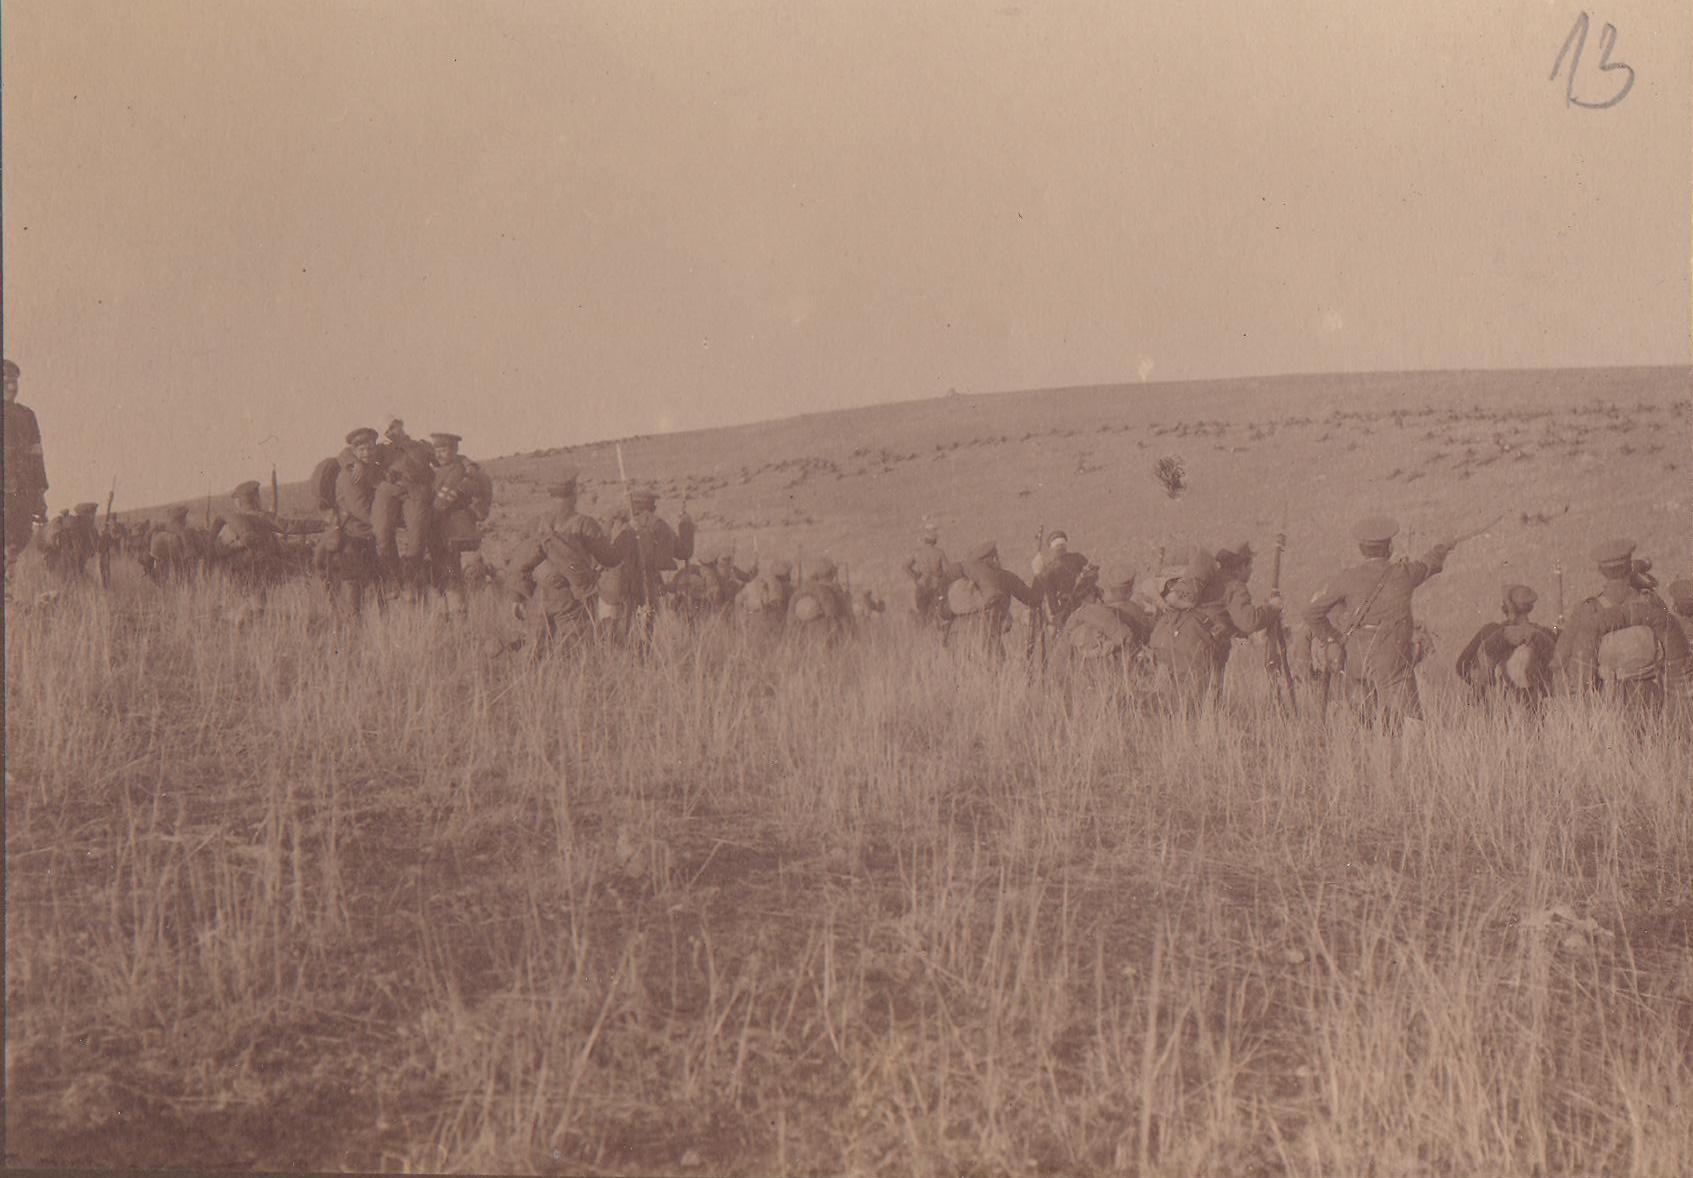 Bugarske trupe napreduju u Srbiji 1915. godine